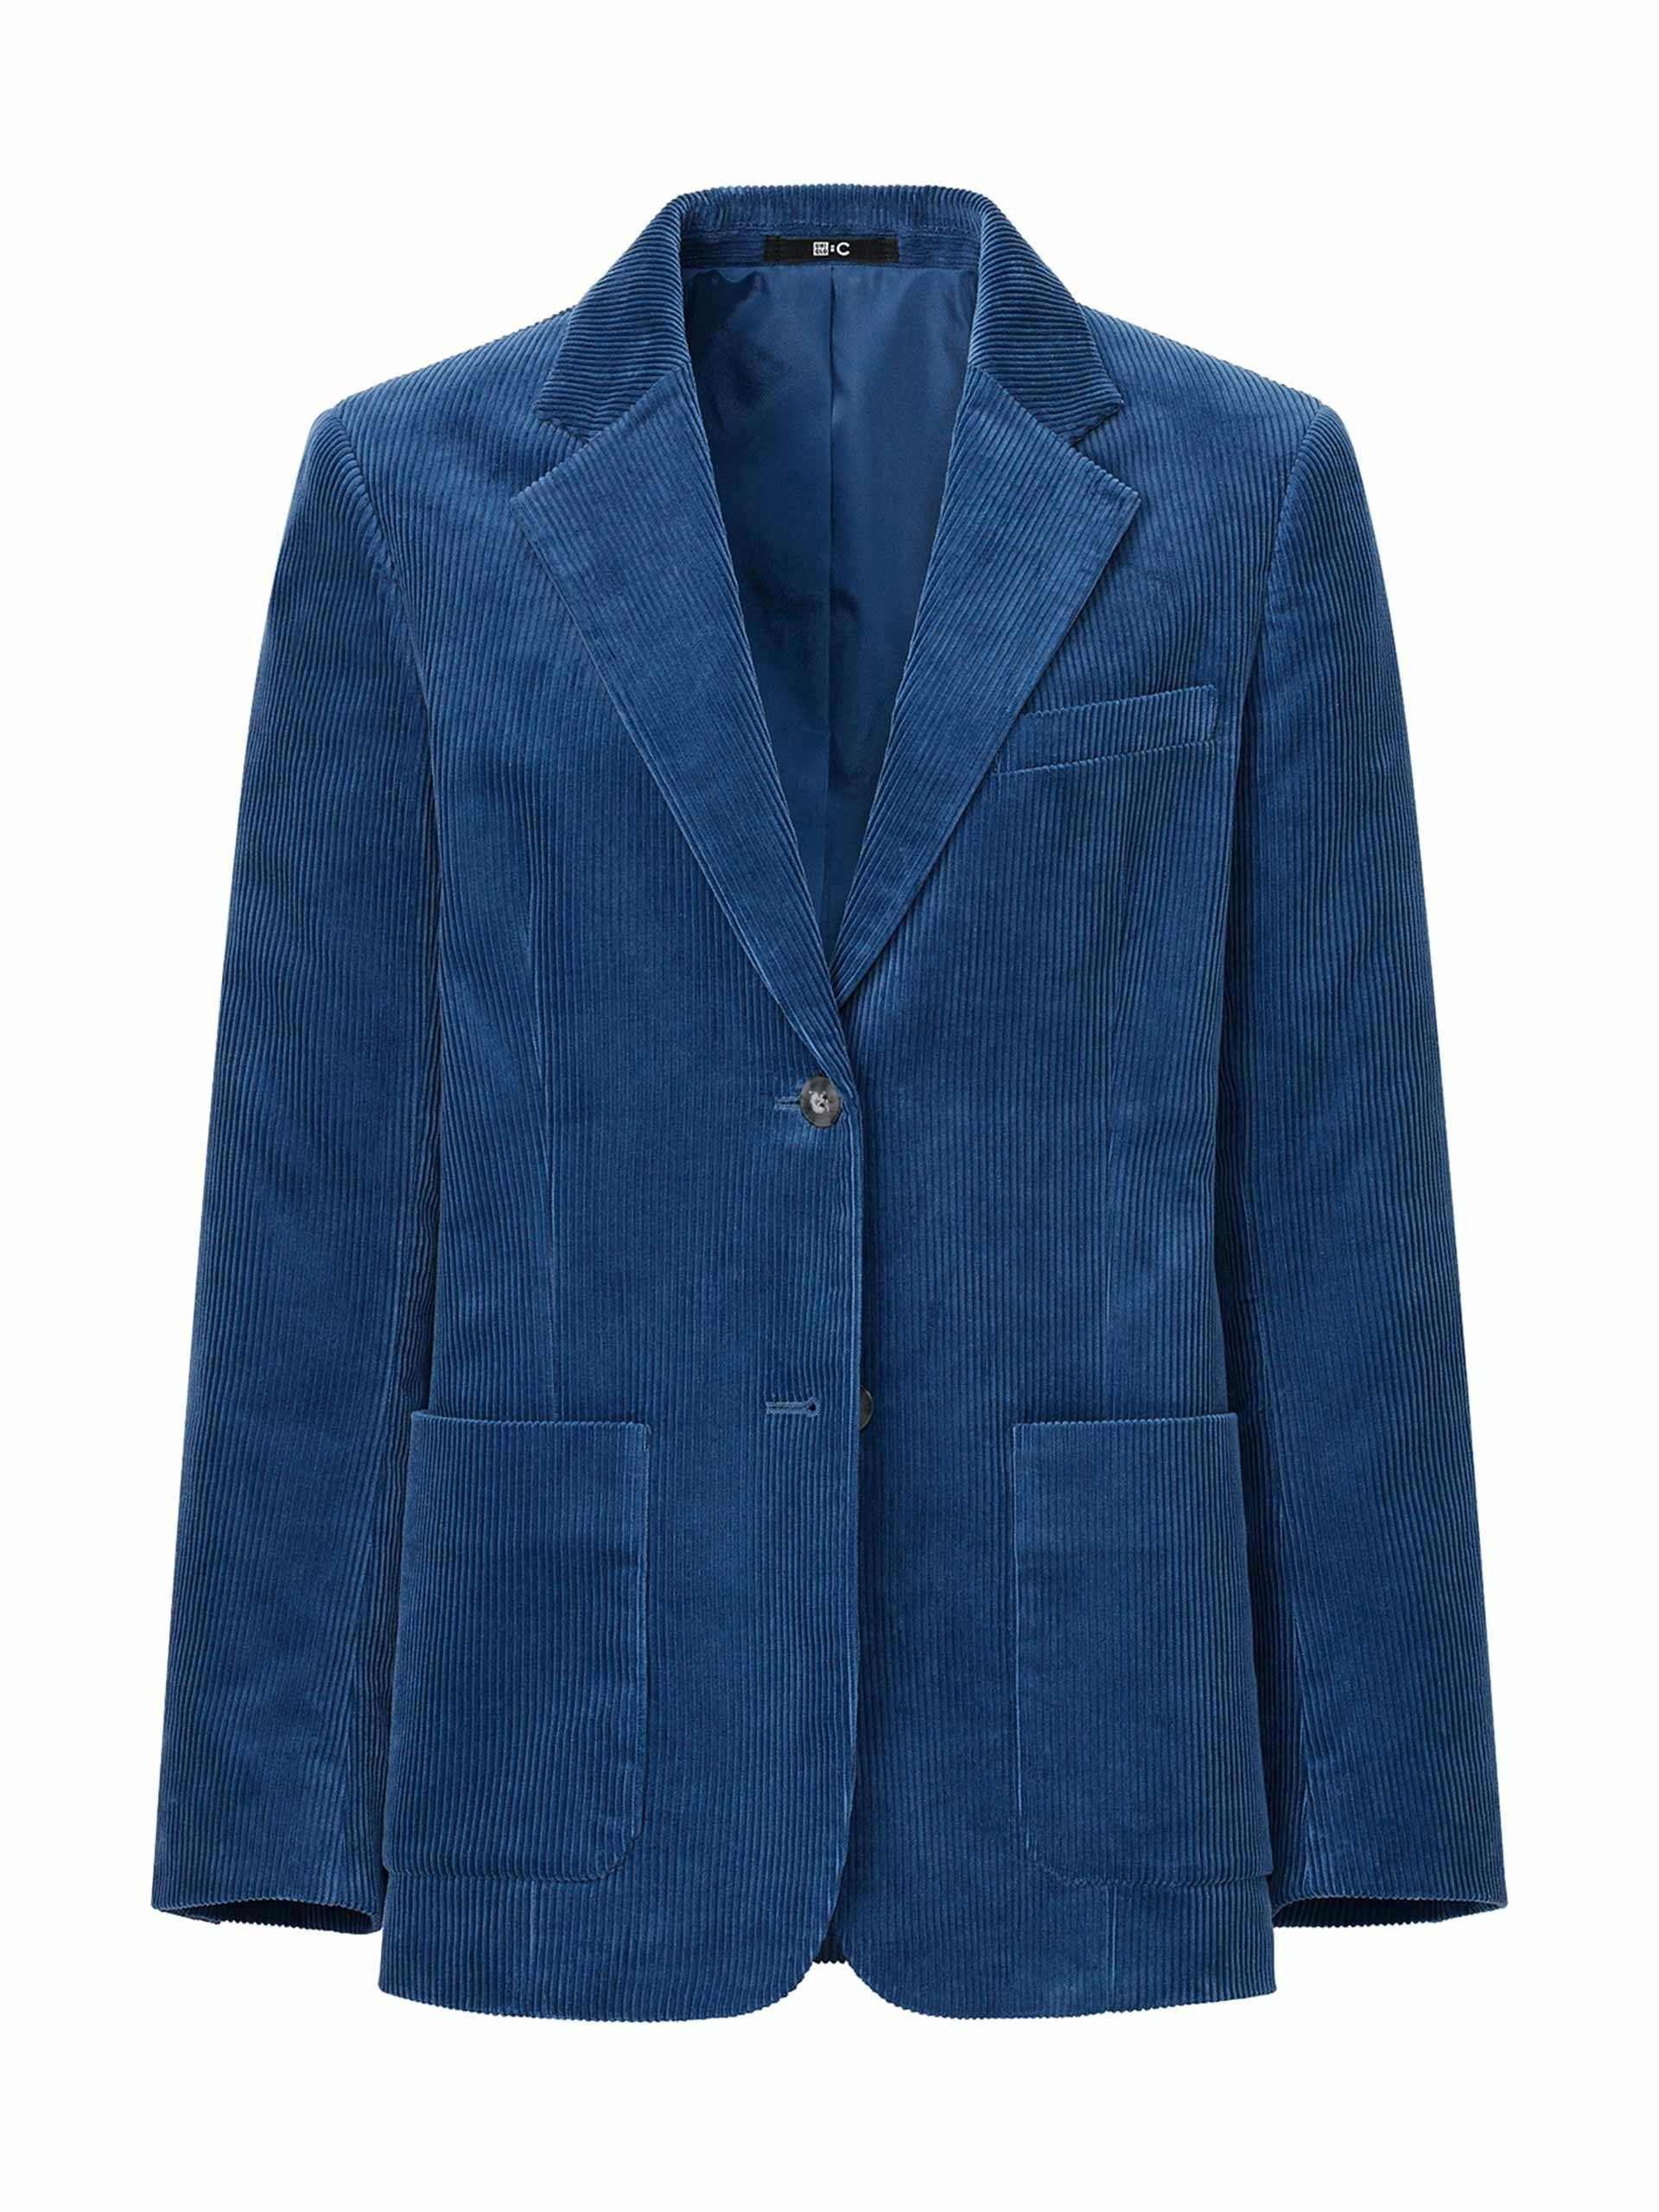 Blue corduroy blazer jacket